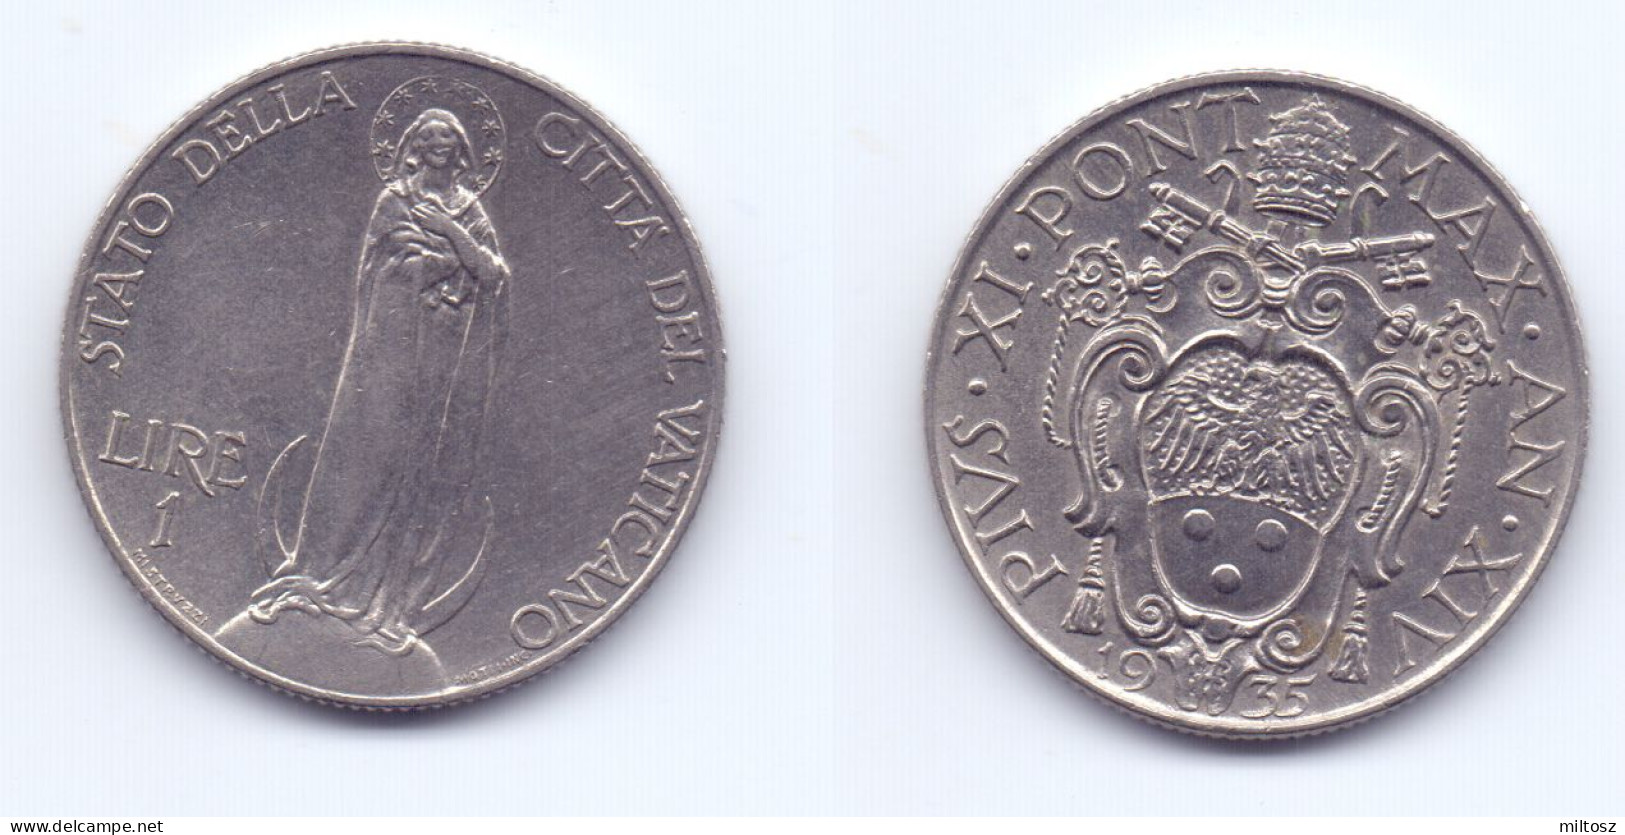 Vatican 1 Lira 1935 - Vatican